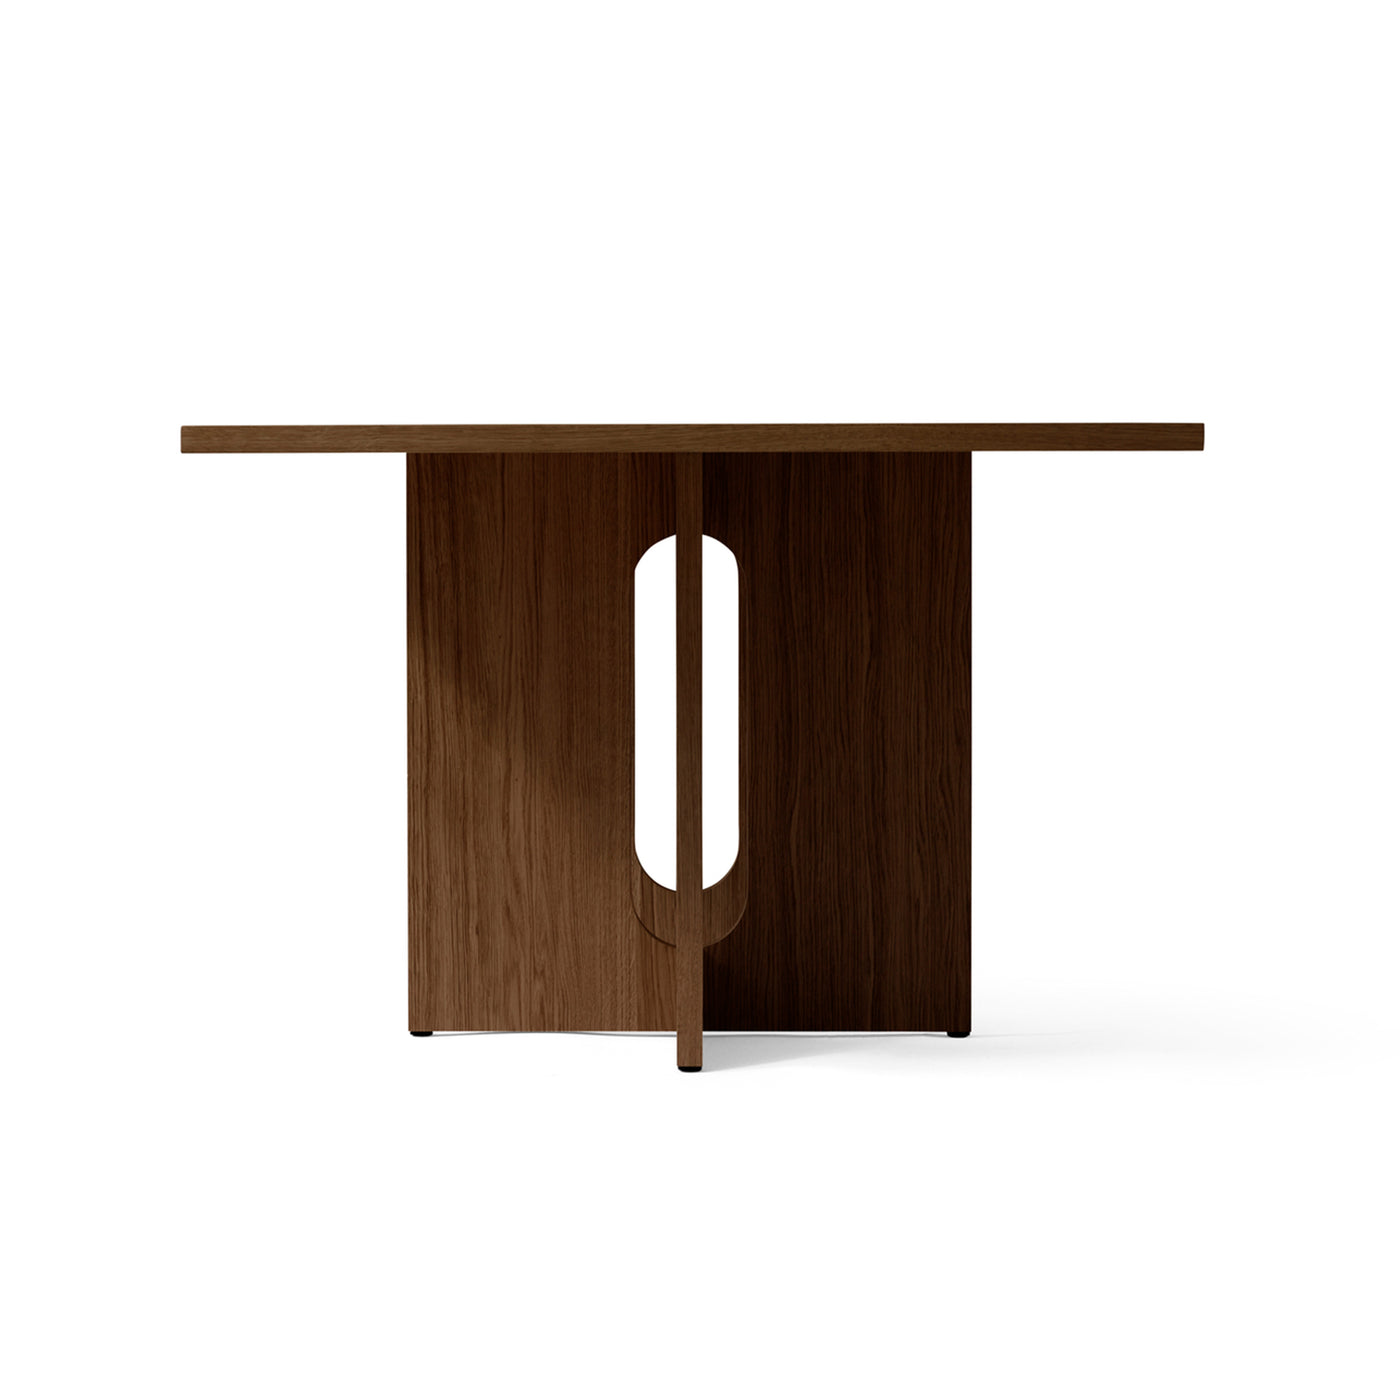 designový jídelní stůl, černý dřevěný jídelní stůl od Menu space, Androgyne dinning table, Menu, kvalitní nábytek do jídelny